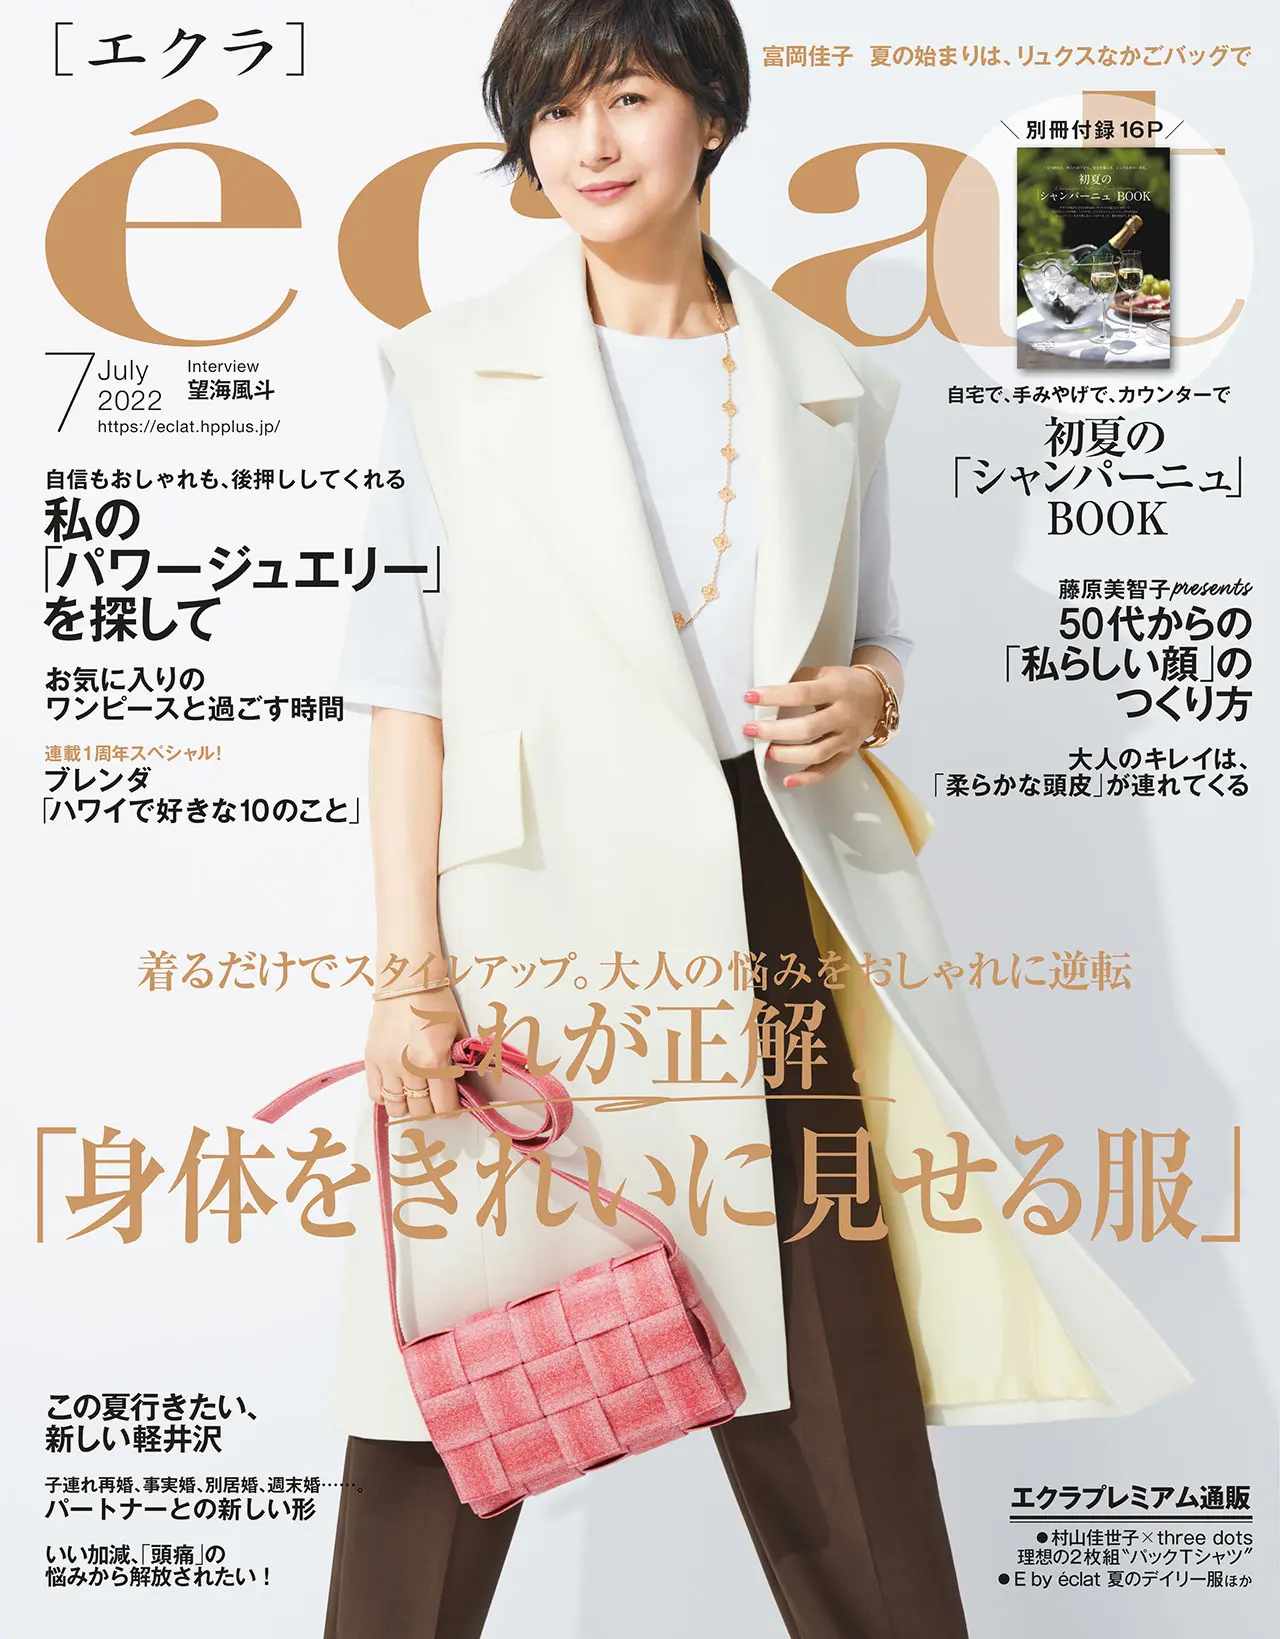 エクラ７月号表紙。カバーモデルは富岡佳子さん。